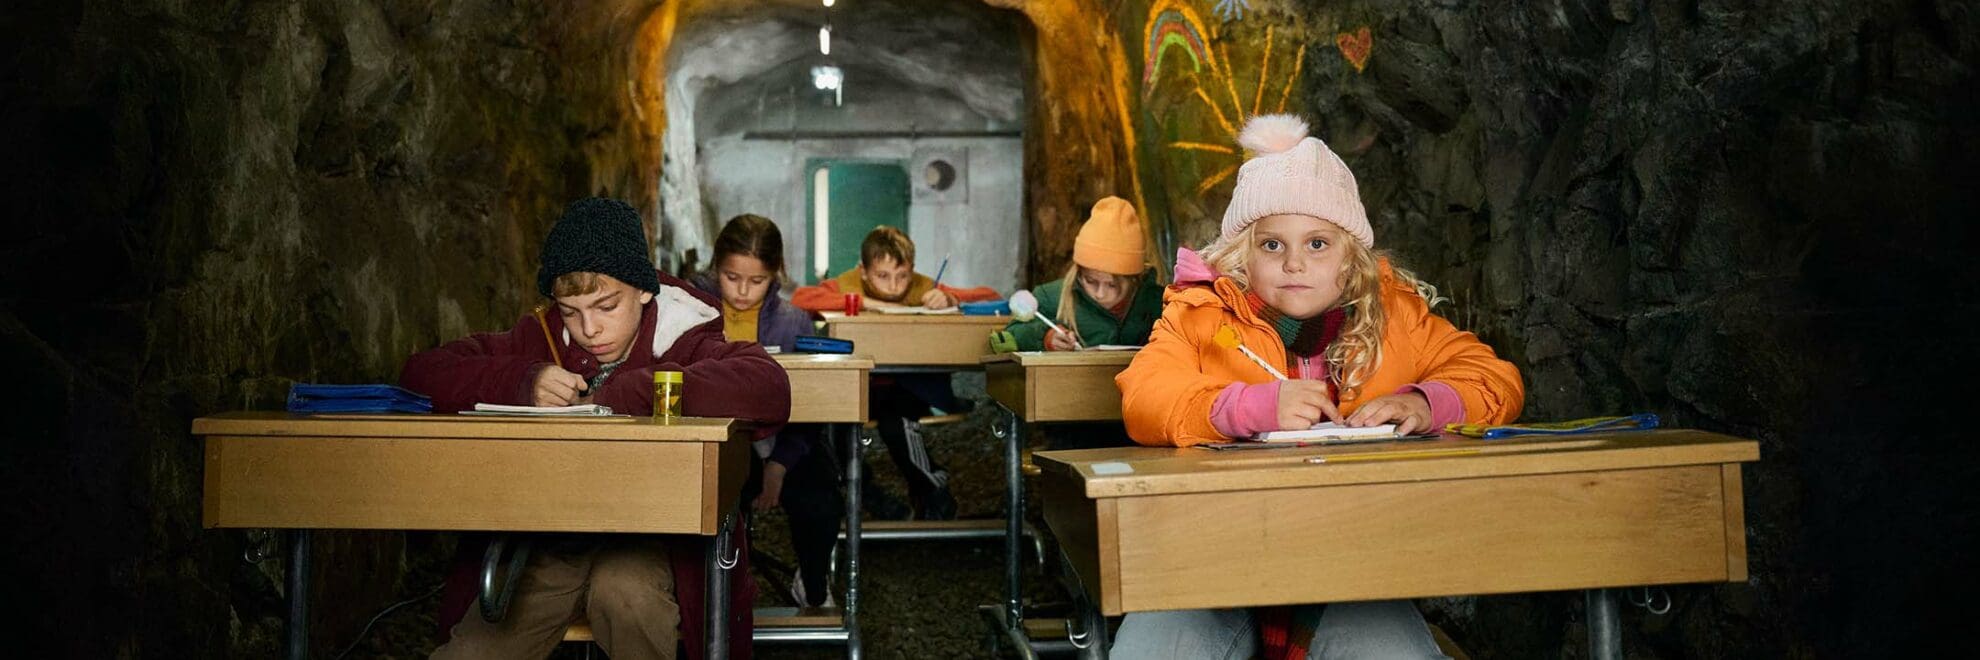 SOS Barnbyar ordnar säkra klassrum för barn i Ukraina.